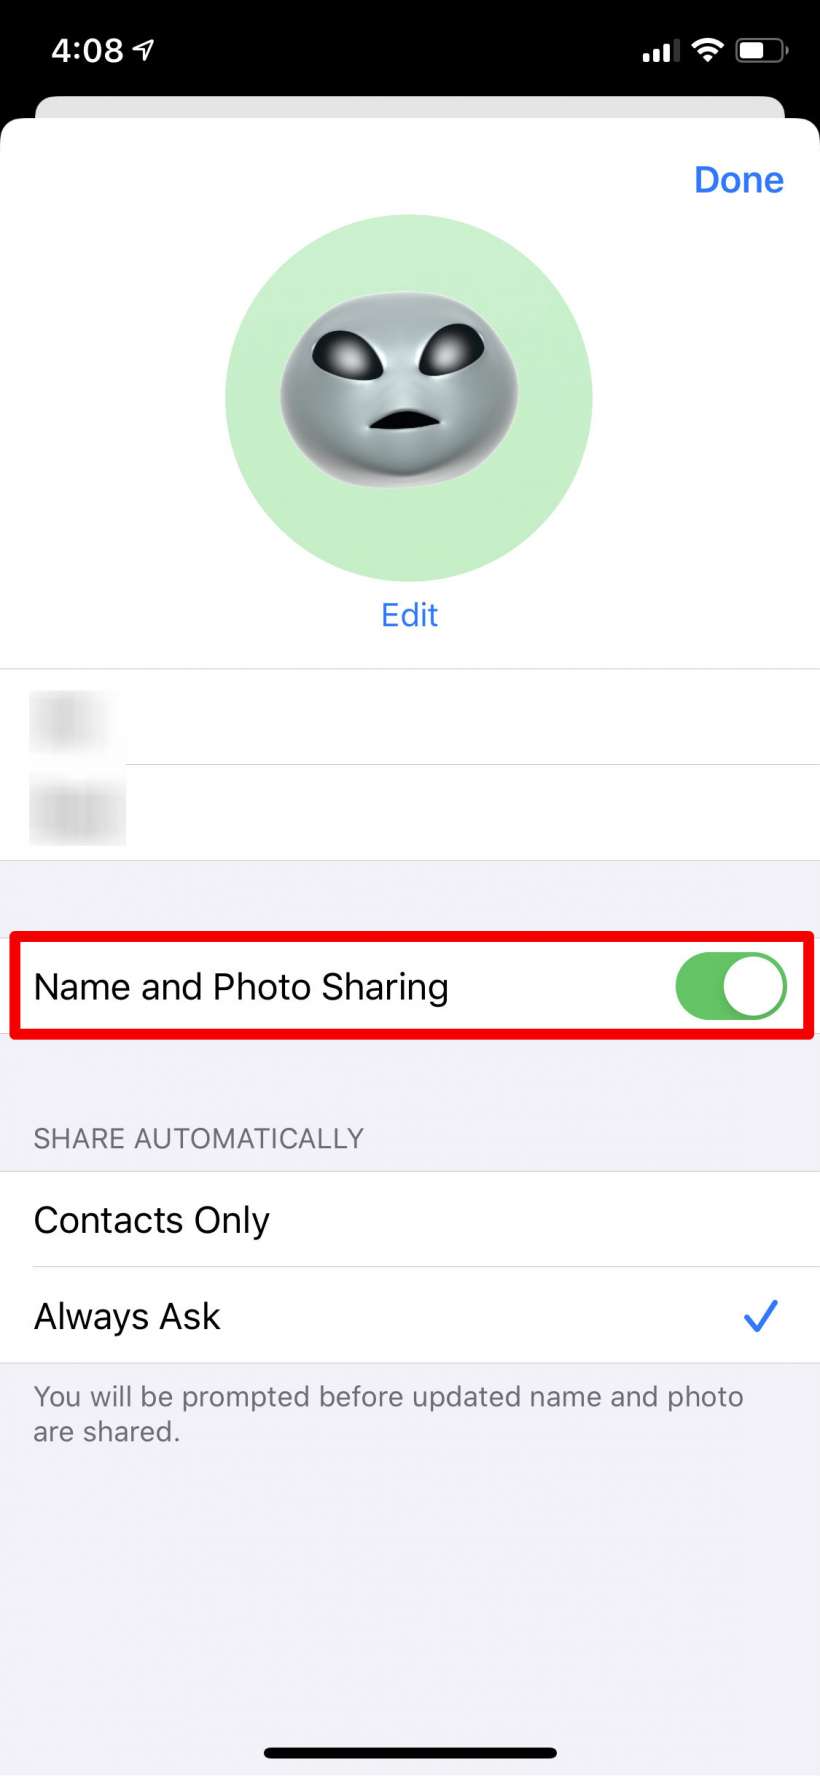 كيفية منع الرسائل من السؤال عما إذا كنت تريد مشاركة اسمك وصورتك على iPhone و iPad.